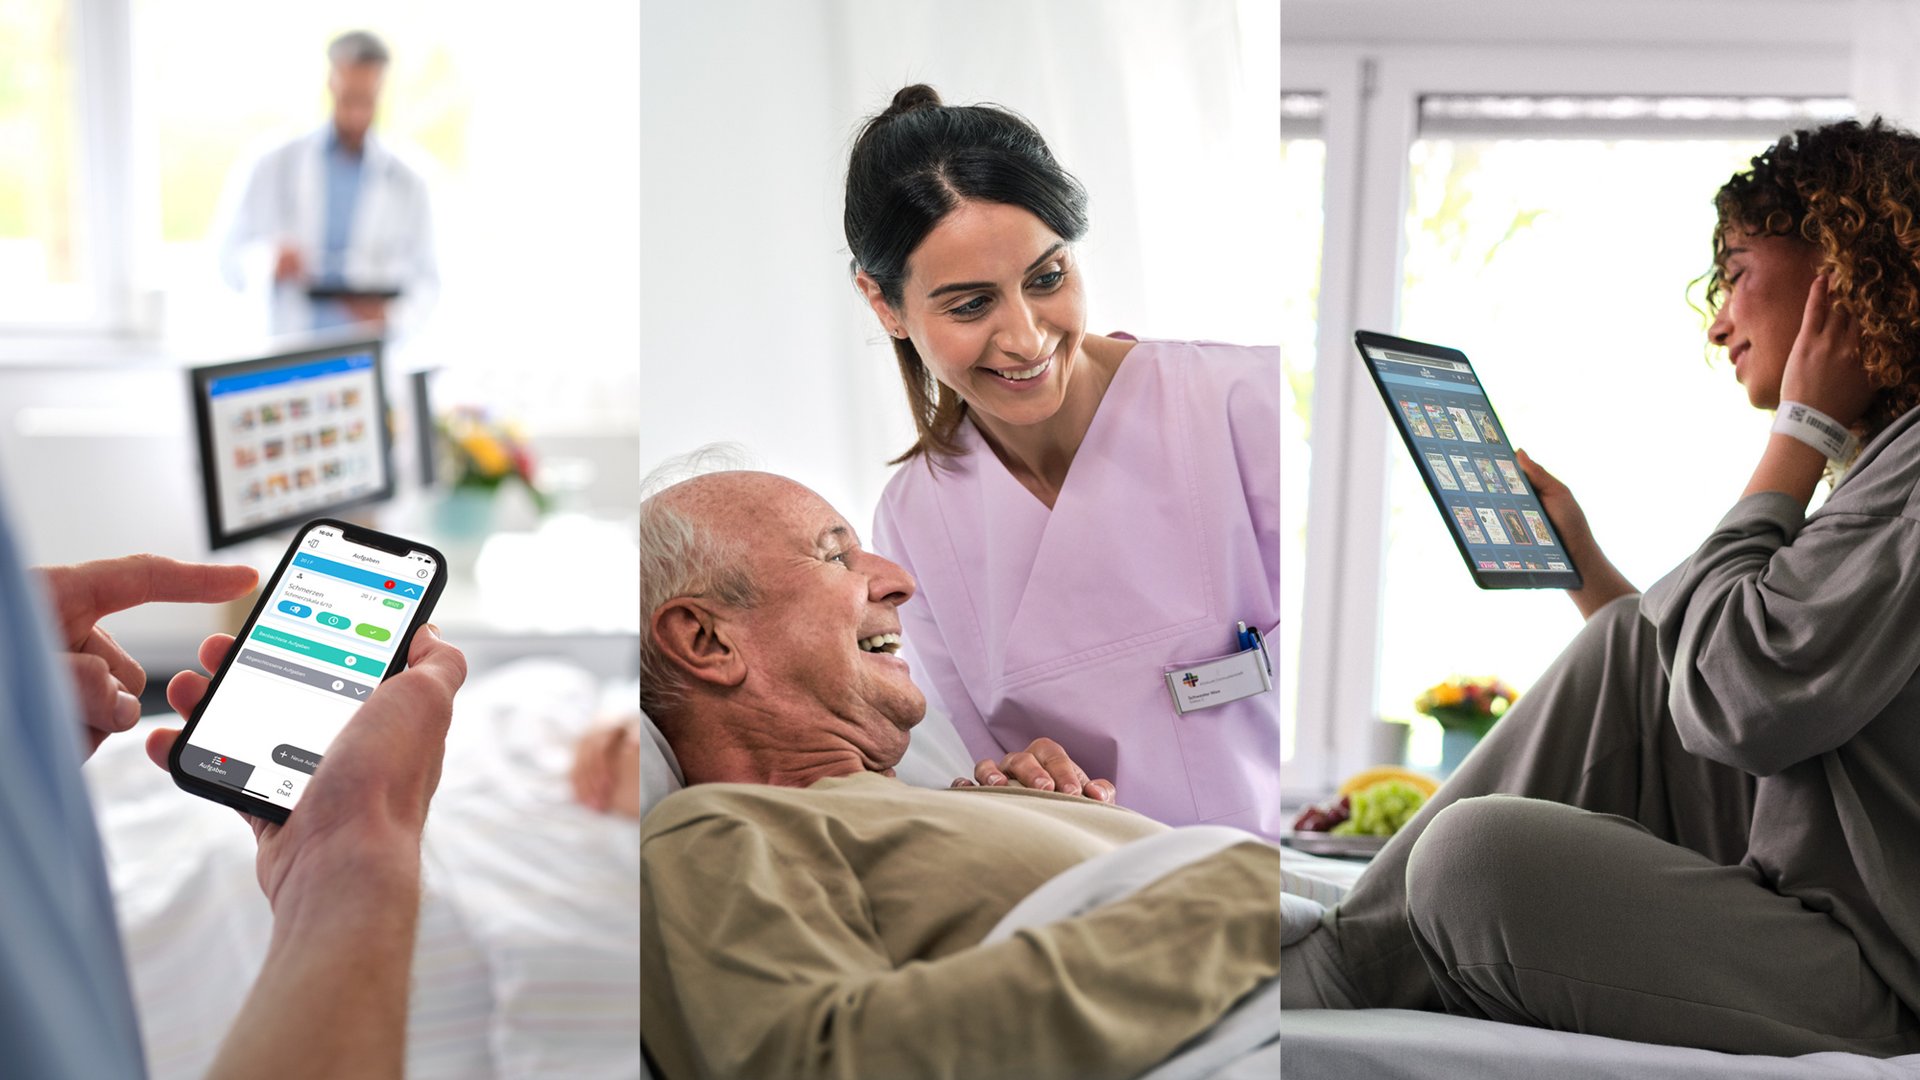 Collage aus drei Bildern: Pfleger bedient Service Call auf Smartphone, Pflegerin und Patient lachen, Patientin liest eMagazines von sharemagazines auf iPad